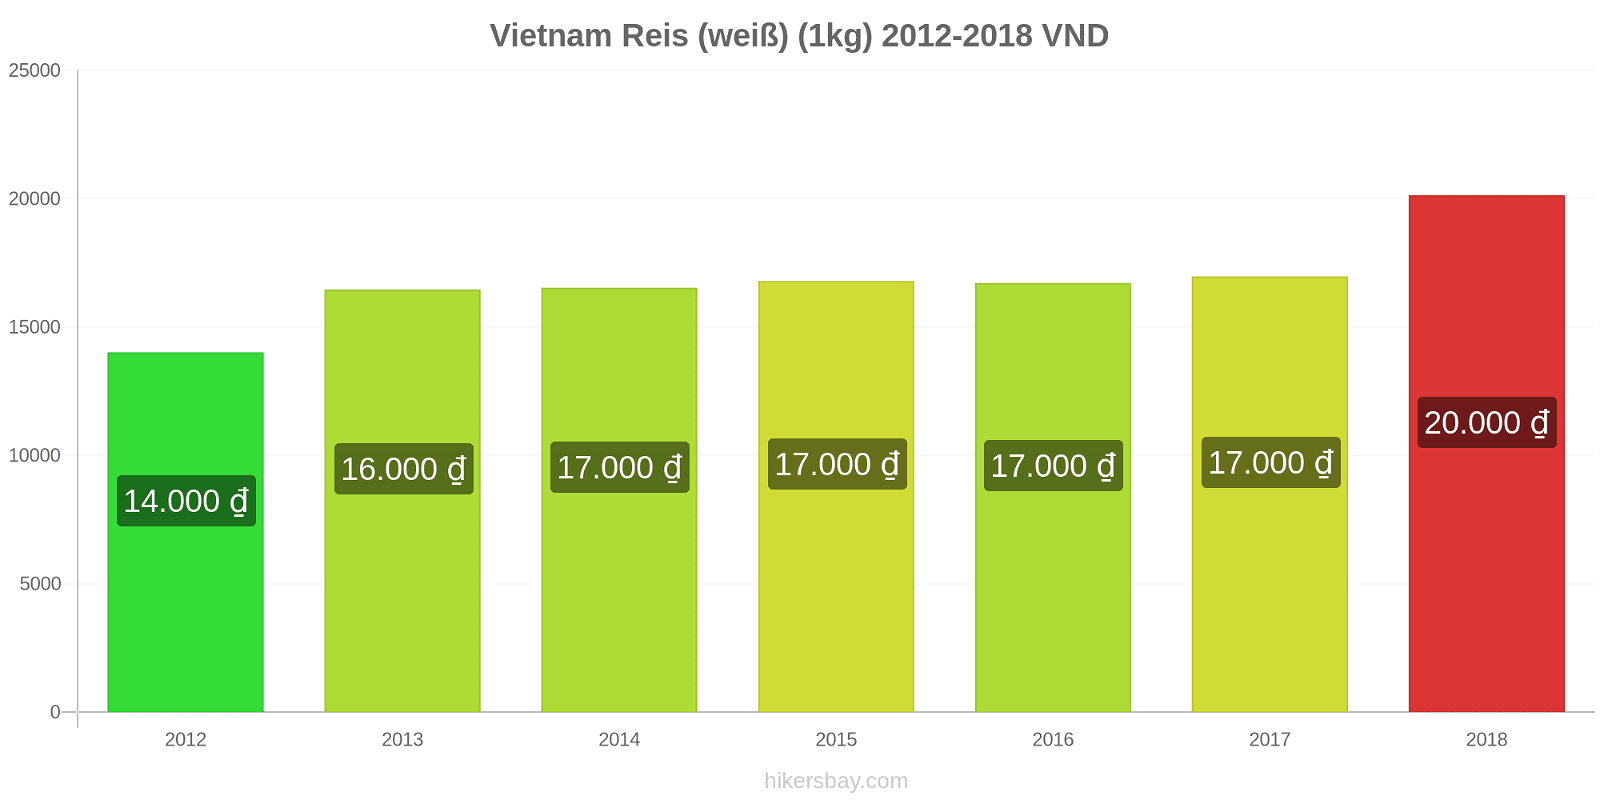 Vietnam Preisänderungen Reis (weiß) (1kg) hikersbay.com